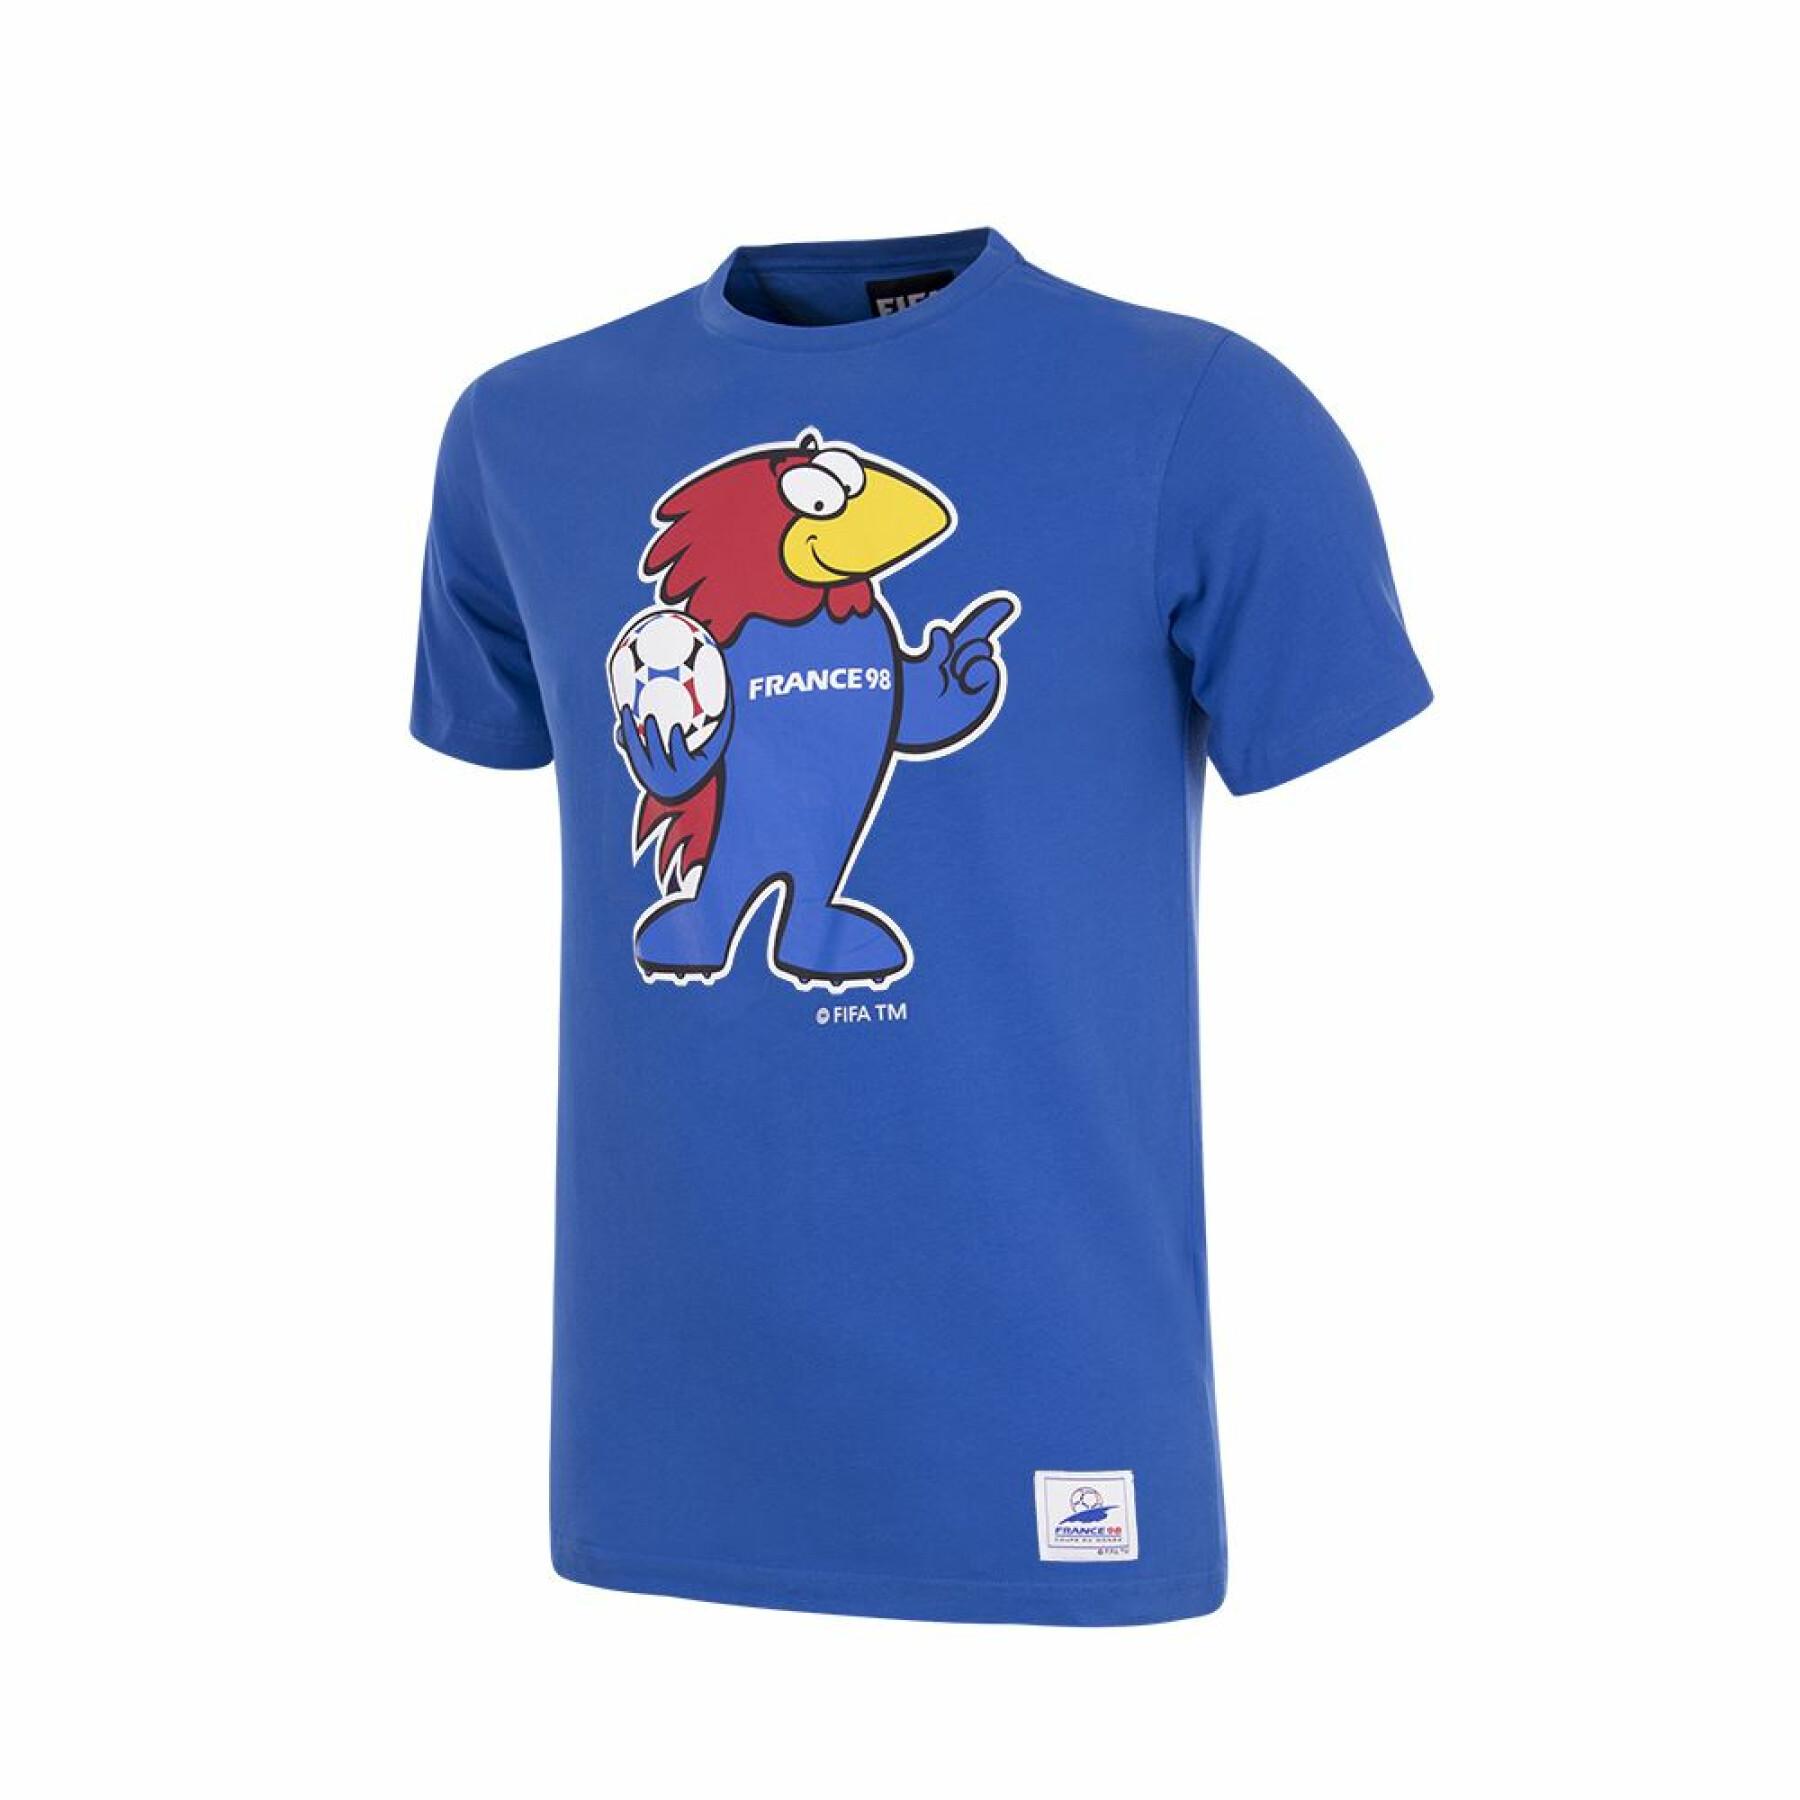 T-shirt de criança Copa France World Cup Mascot 1998